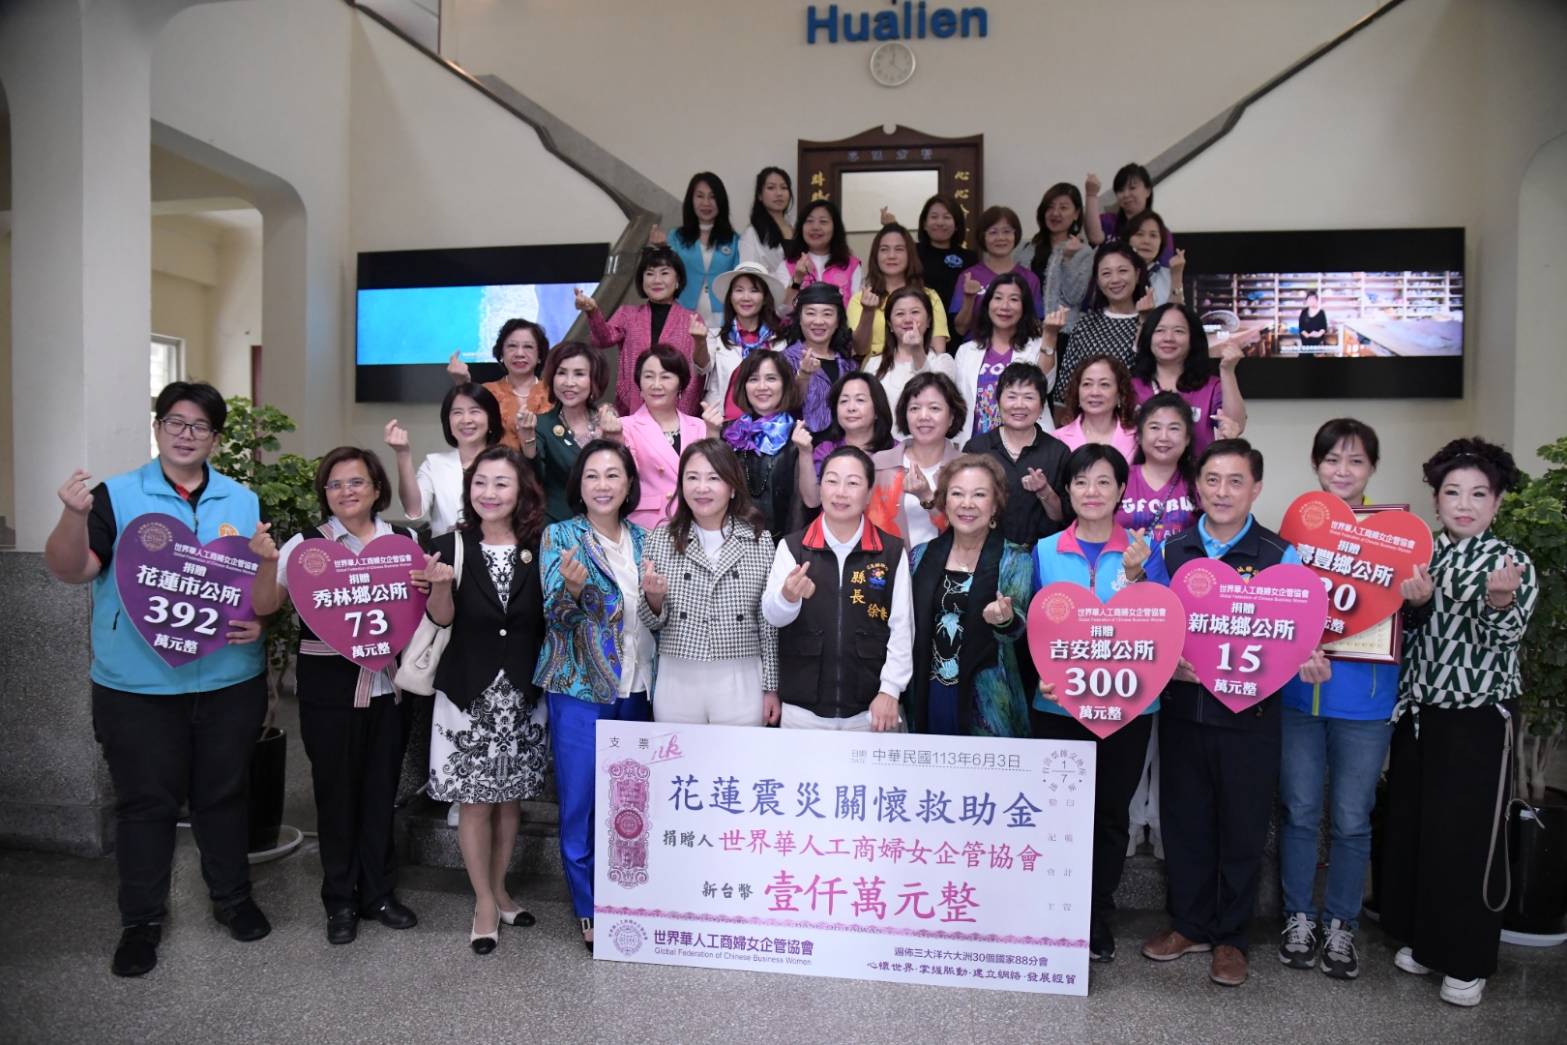 世界華人工商婦女企管協會總會捐助1000萬元賑災 徐榛蔚感謝善心馳援